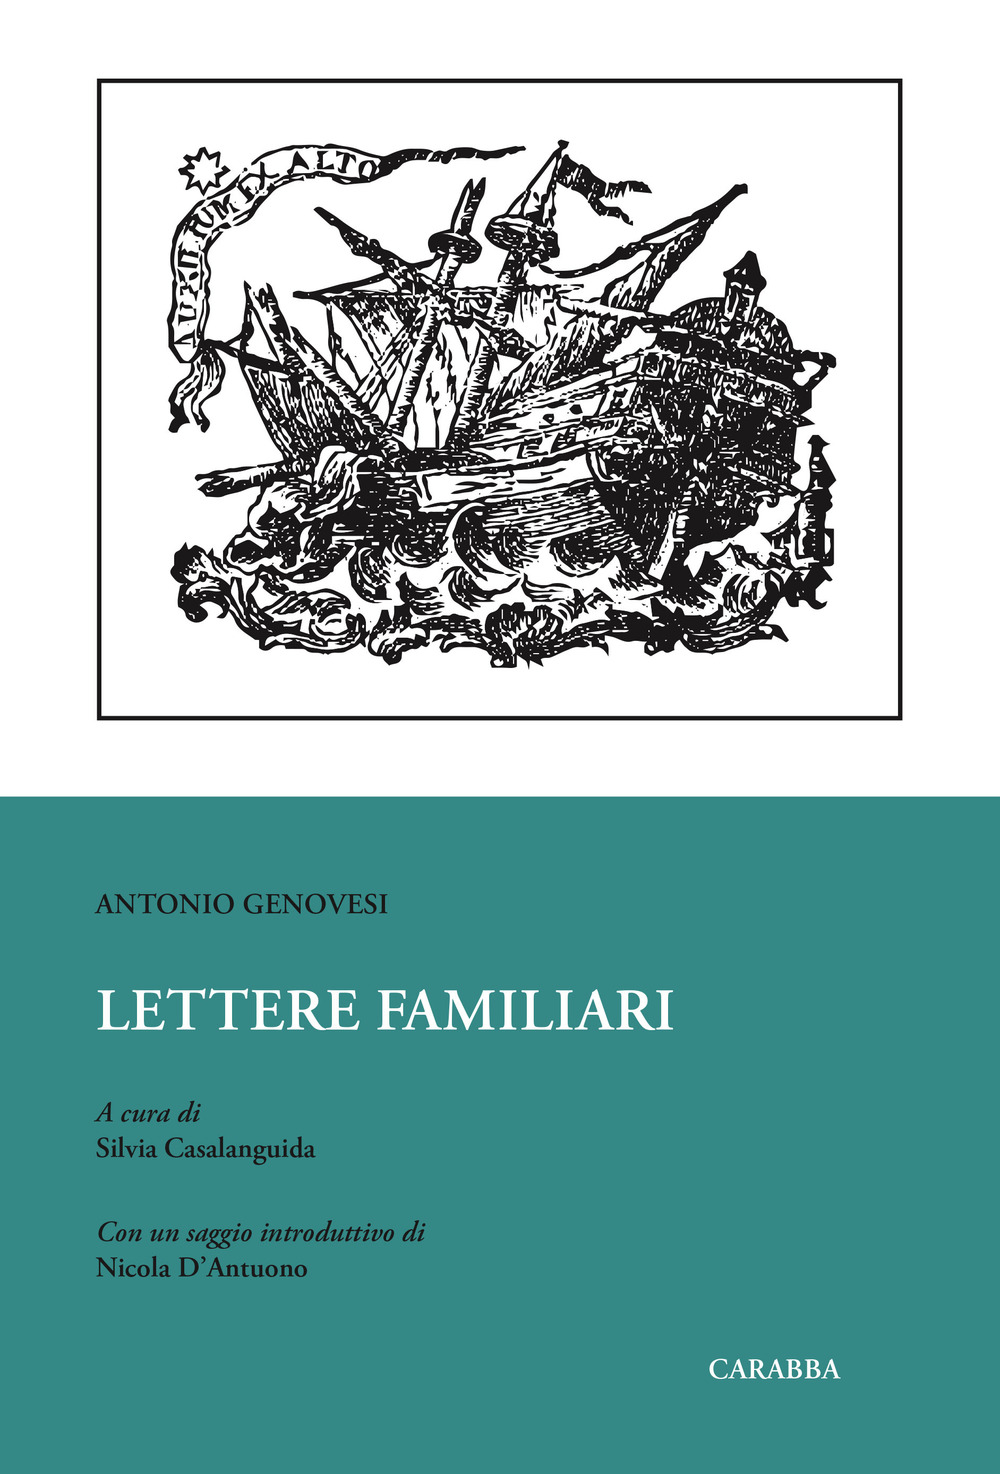 Libri Antonio Genovesi - Lettere Familiari NUOVO SIGILLATO, EDIZIONE DEL 27/06/2019 SUBITO DISPONIBILE